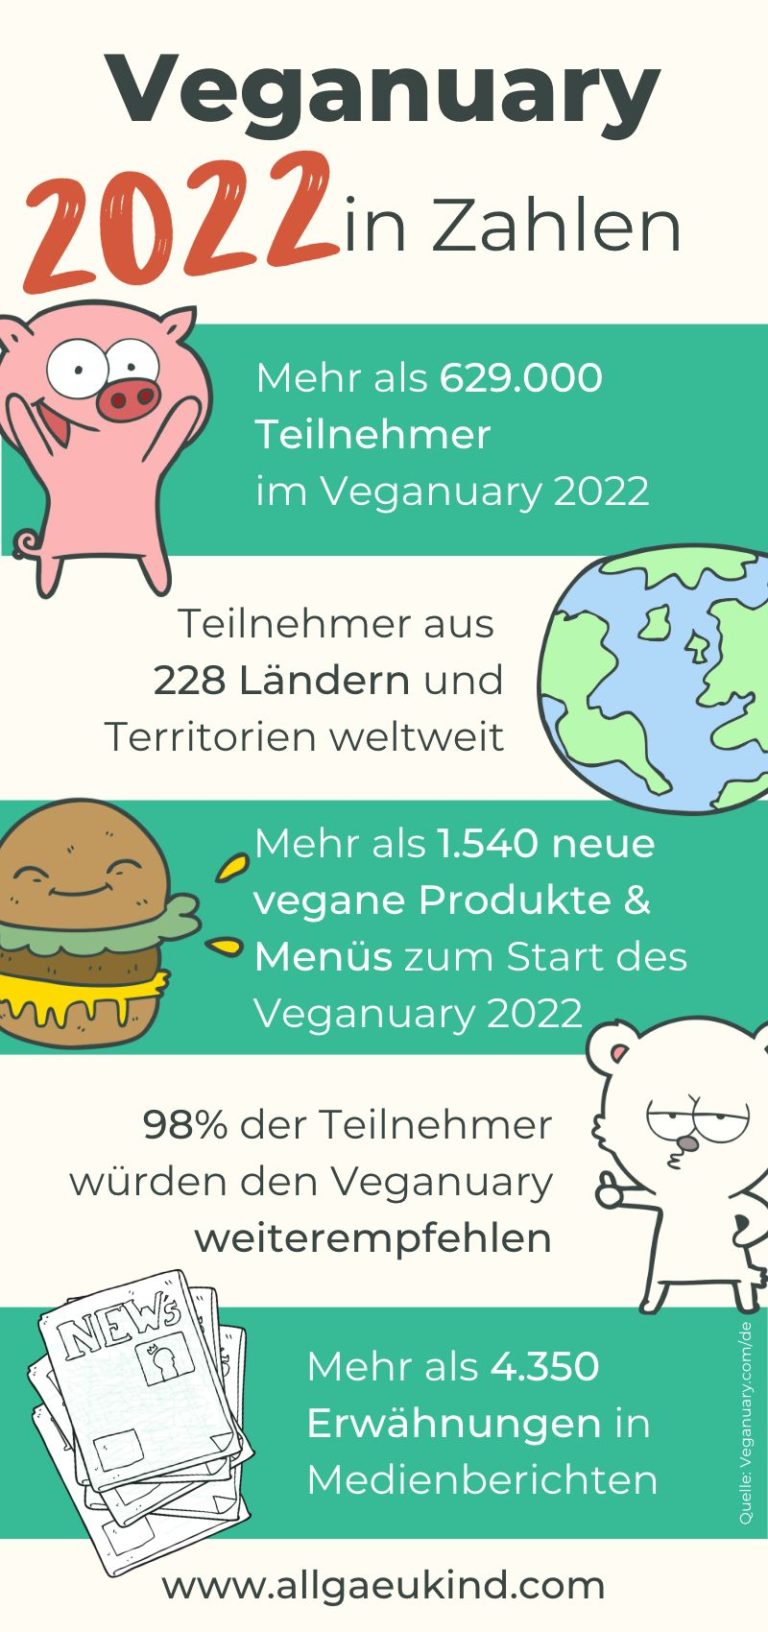 Veganuary 2022 in Zahlen